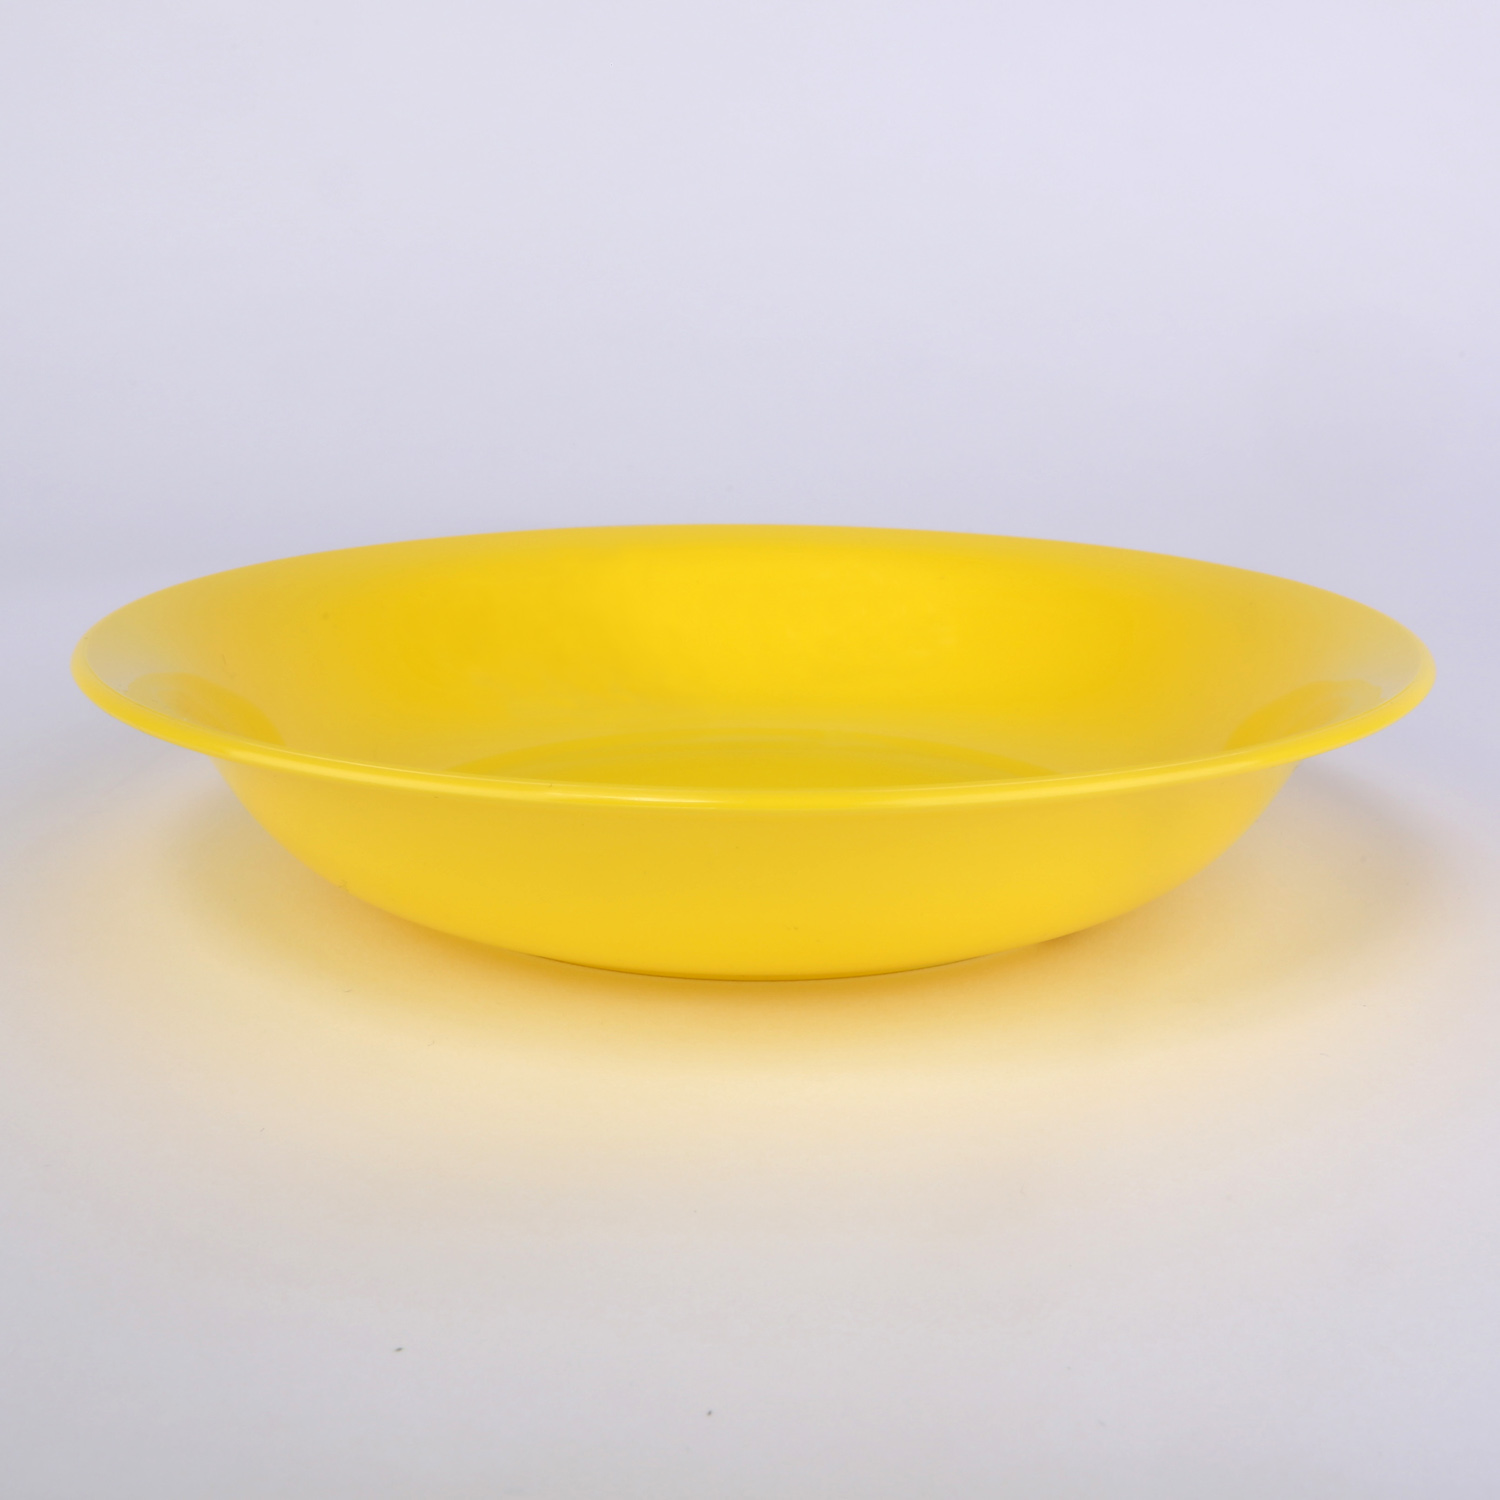 vaLon Zephyr Suppenteller 20,5 cm aus stadstofffreiem Kunststoff in der Farbe sonnengelb.